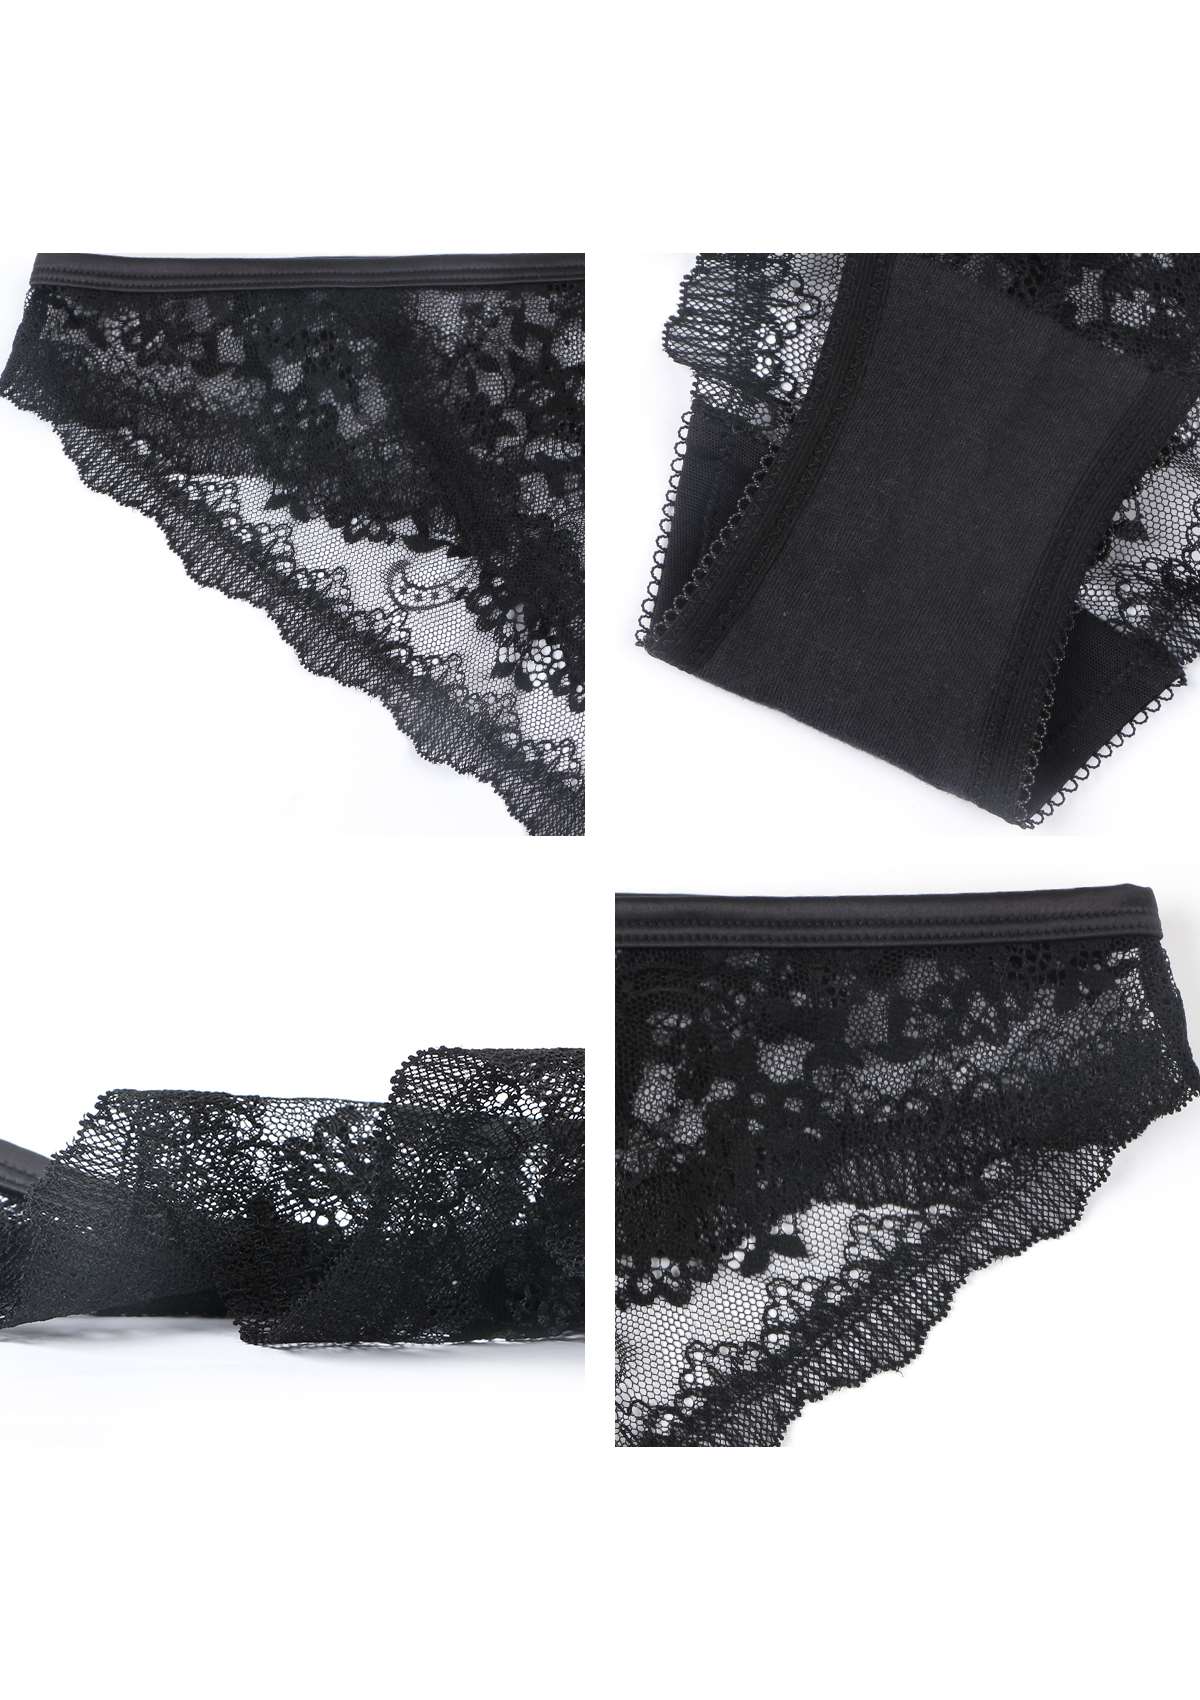 HSIA Floral Bridal Intricate All-Over Lace Romantic Bikini Underwear - Black / XXL